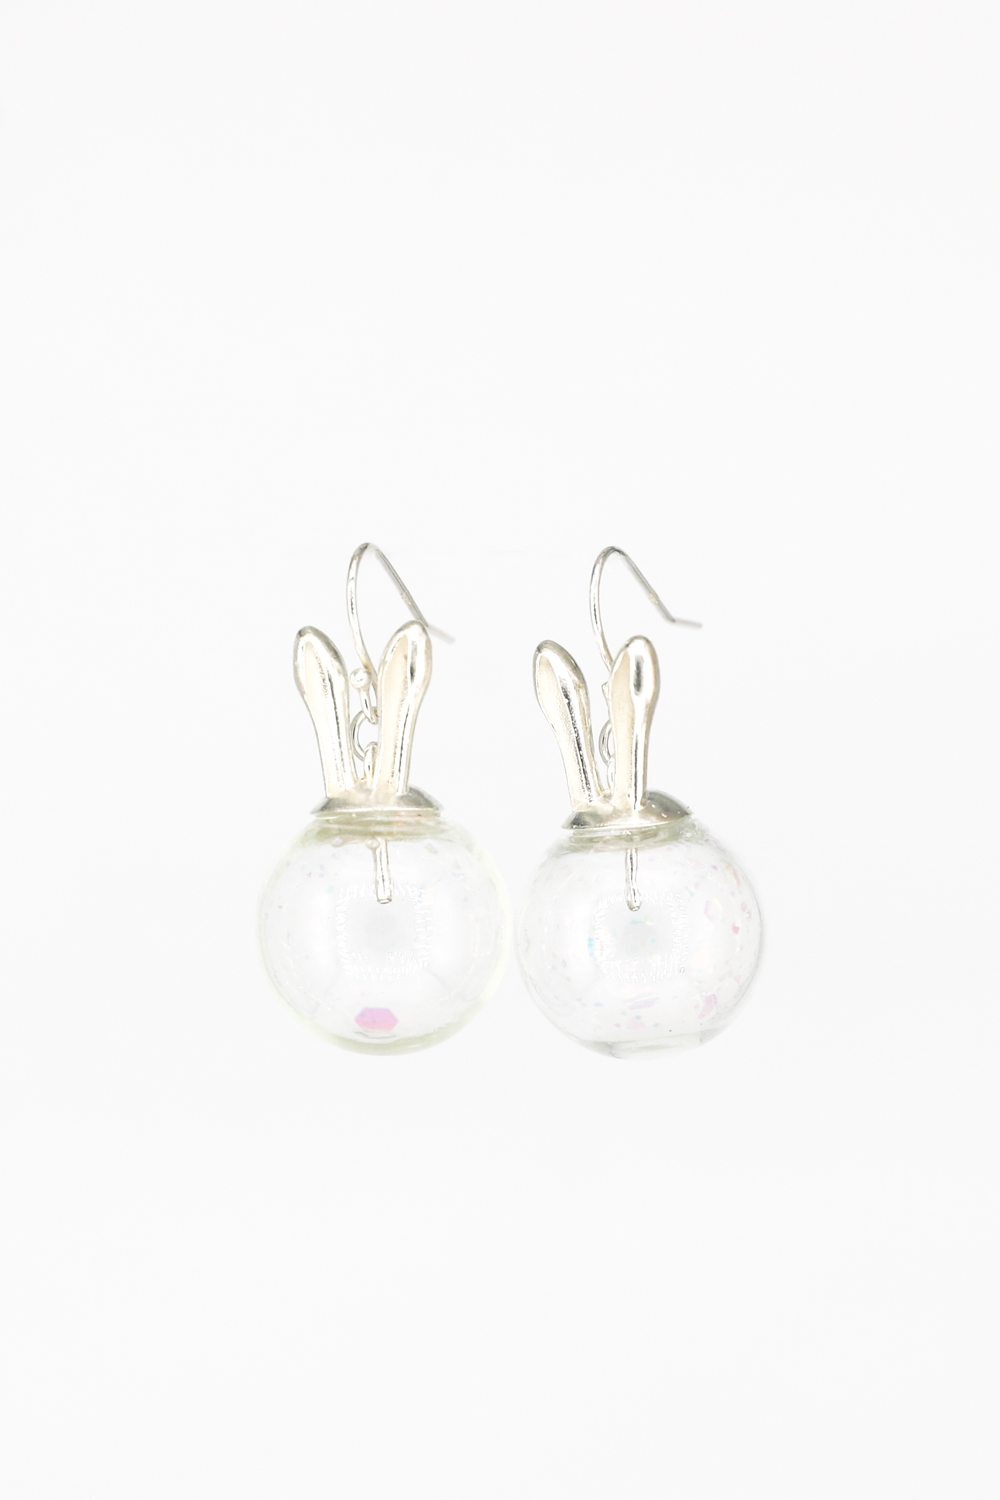 The Rabbit Ear Gem French Hook Earrings - Sterling Silver